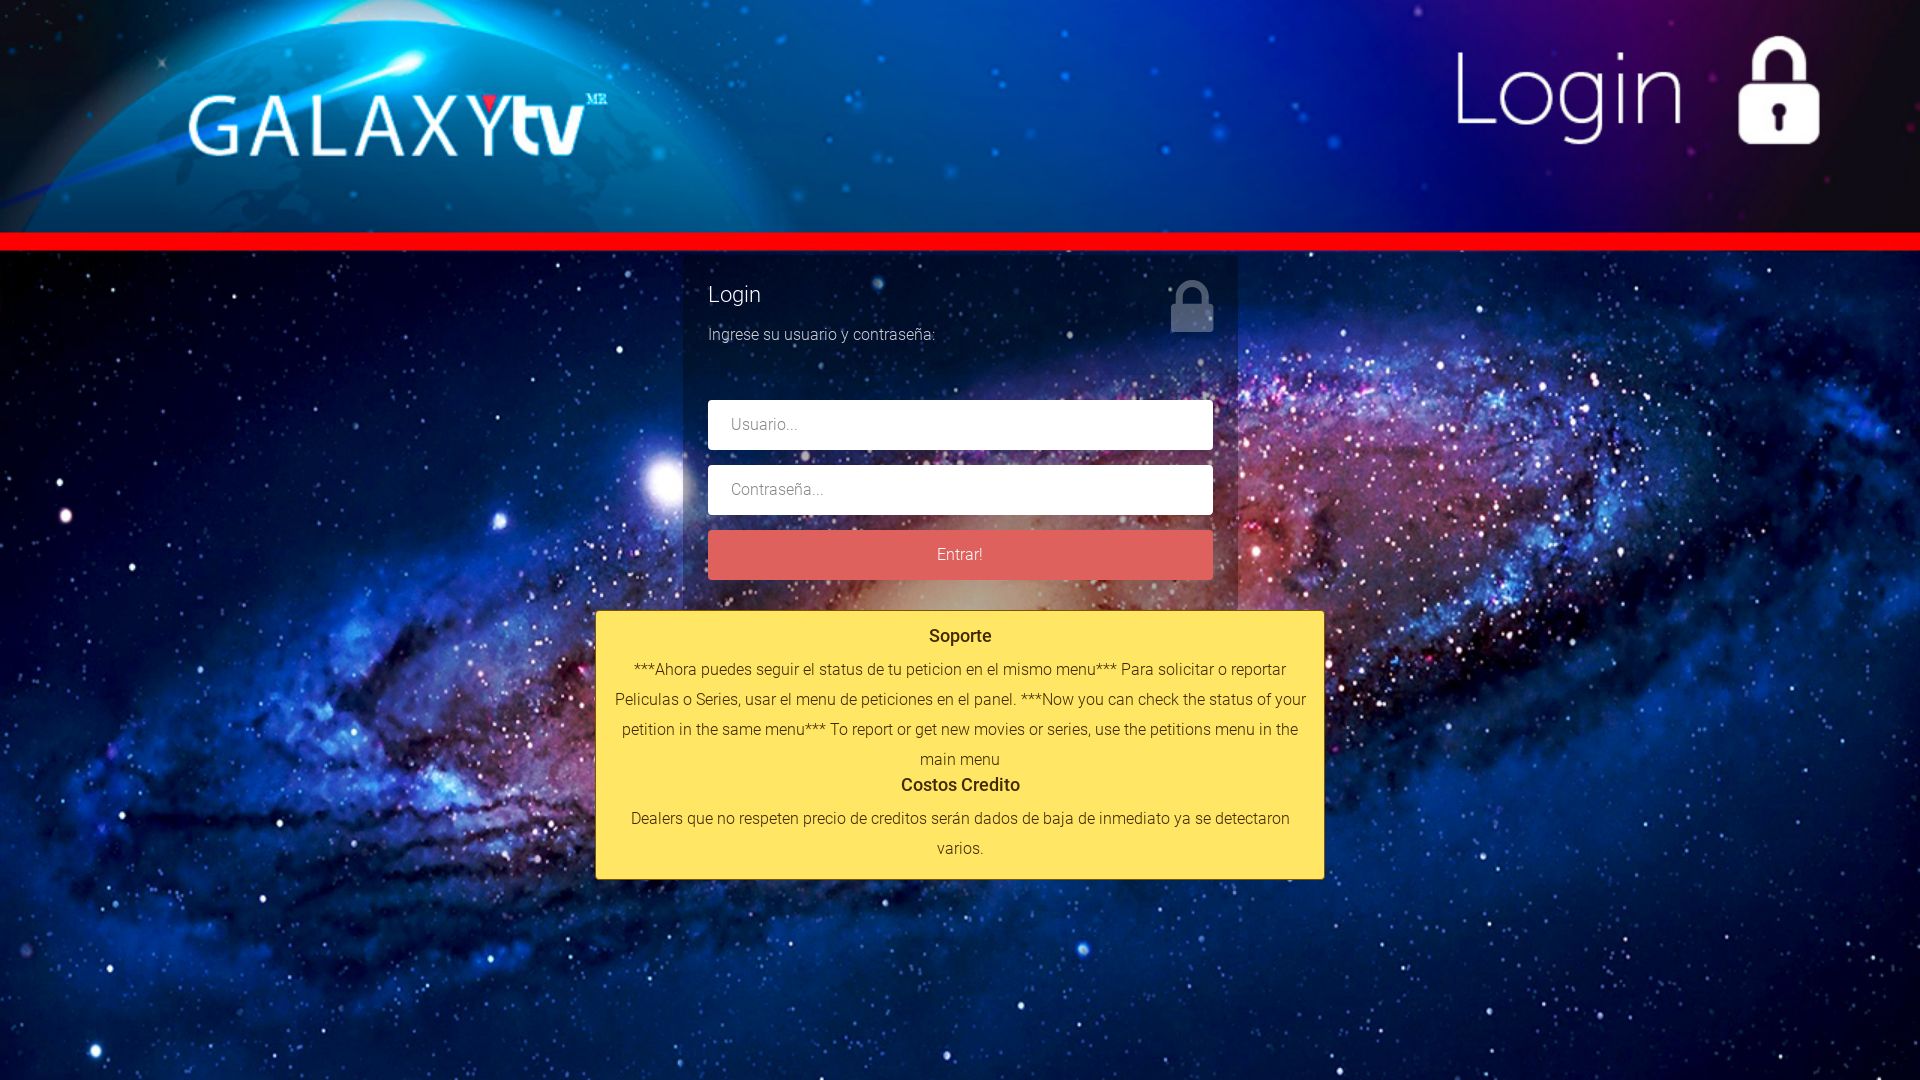 网站状态 galaxytv.mx 是  在线的